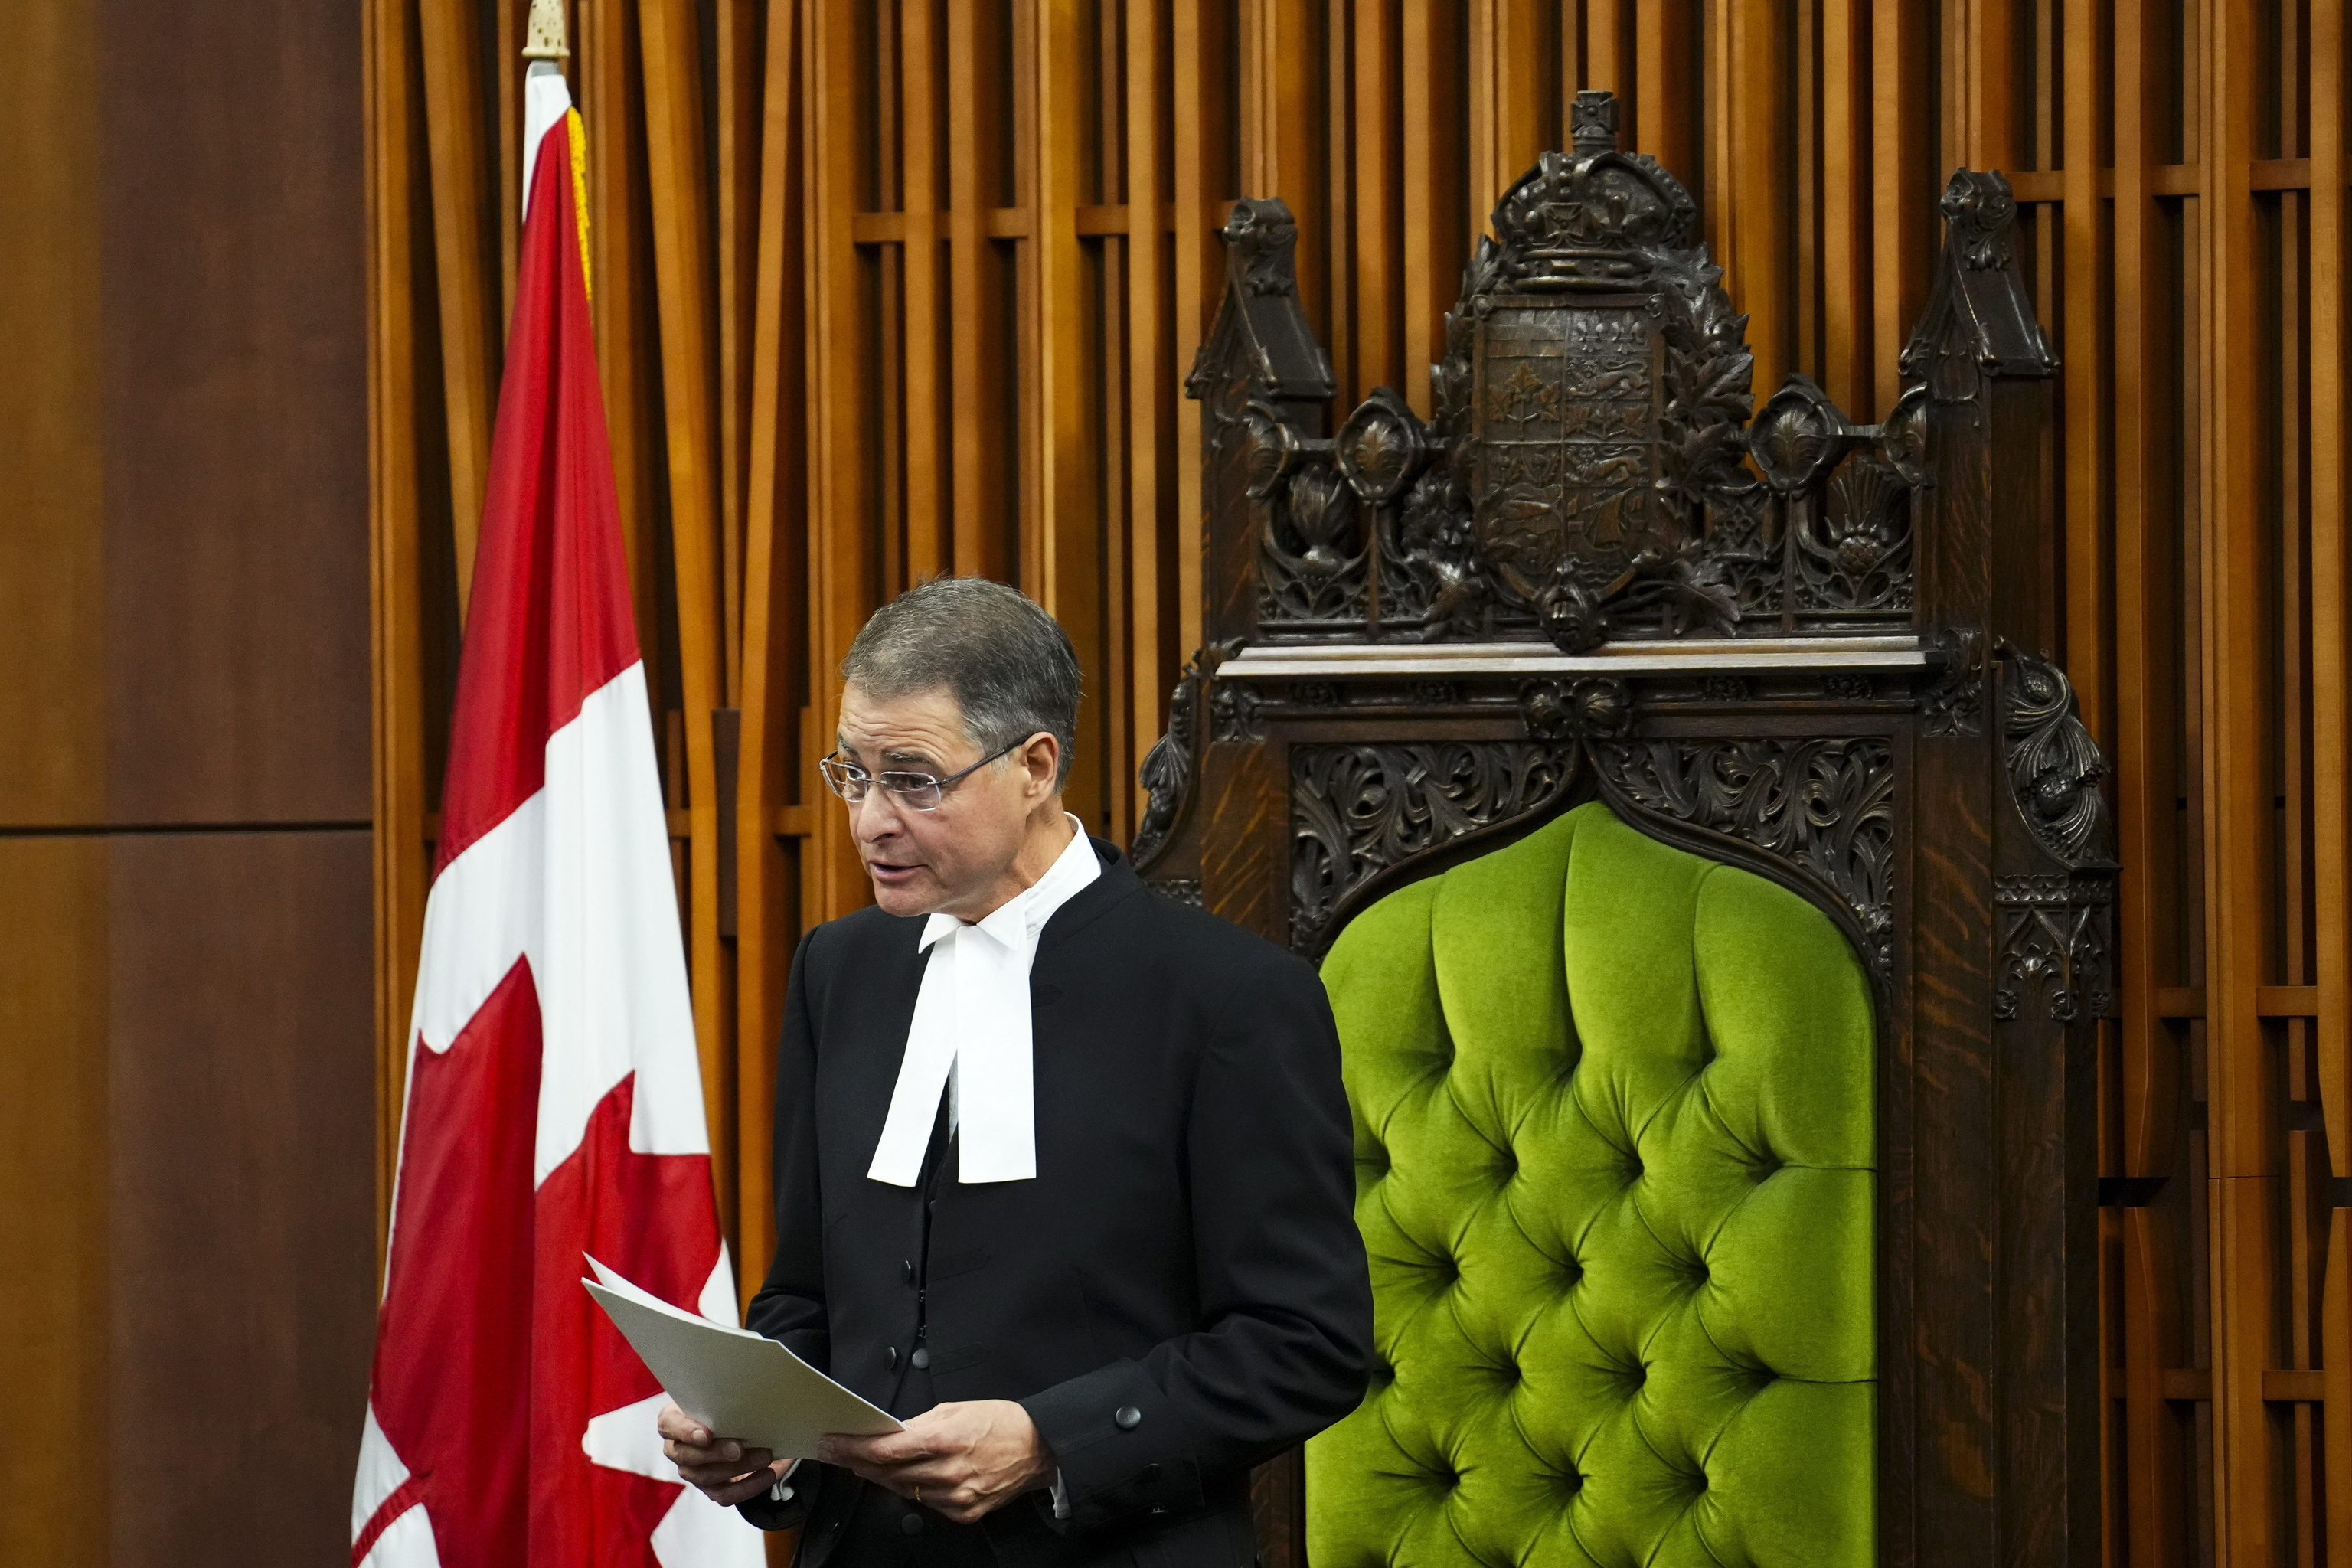 El presidente del Parlamento canadiense dimite tras el elogio a un veterano de guerra nazi